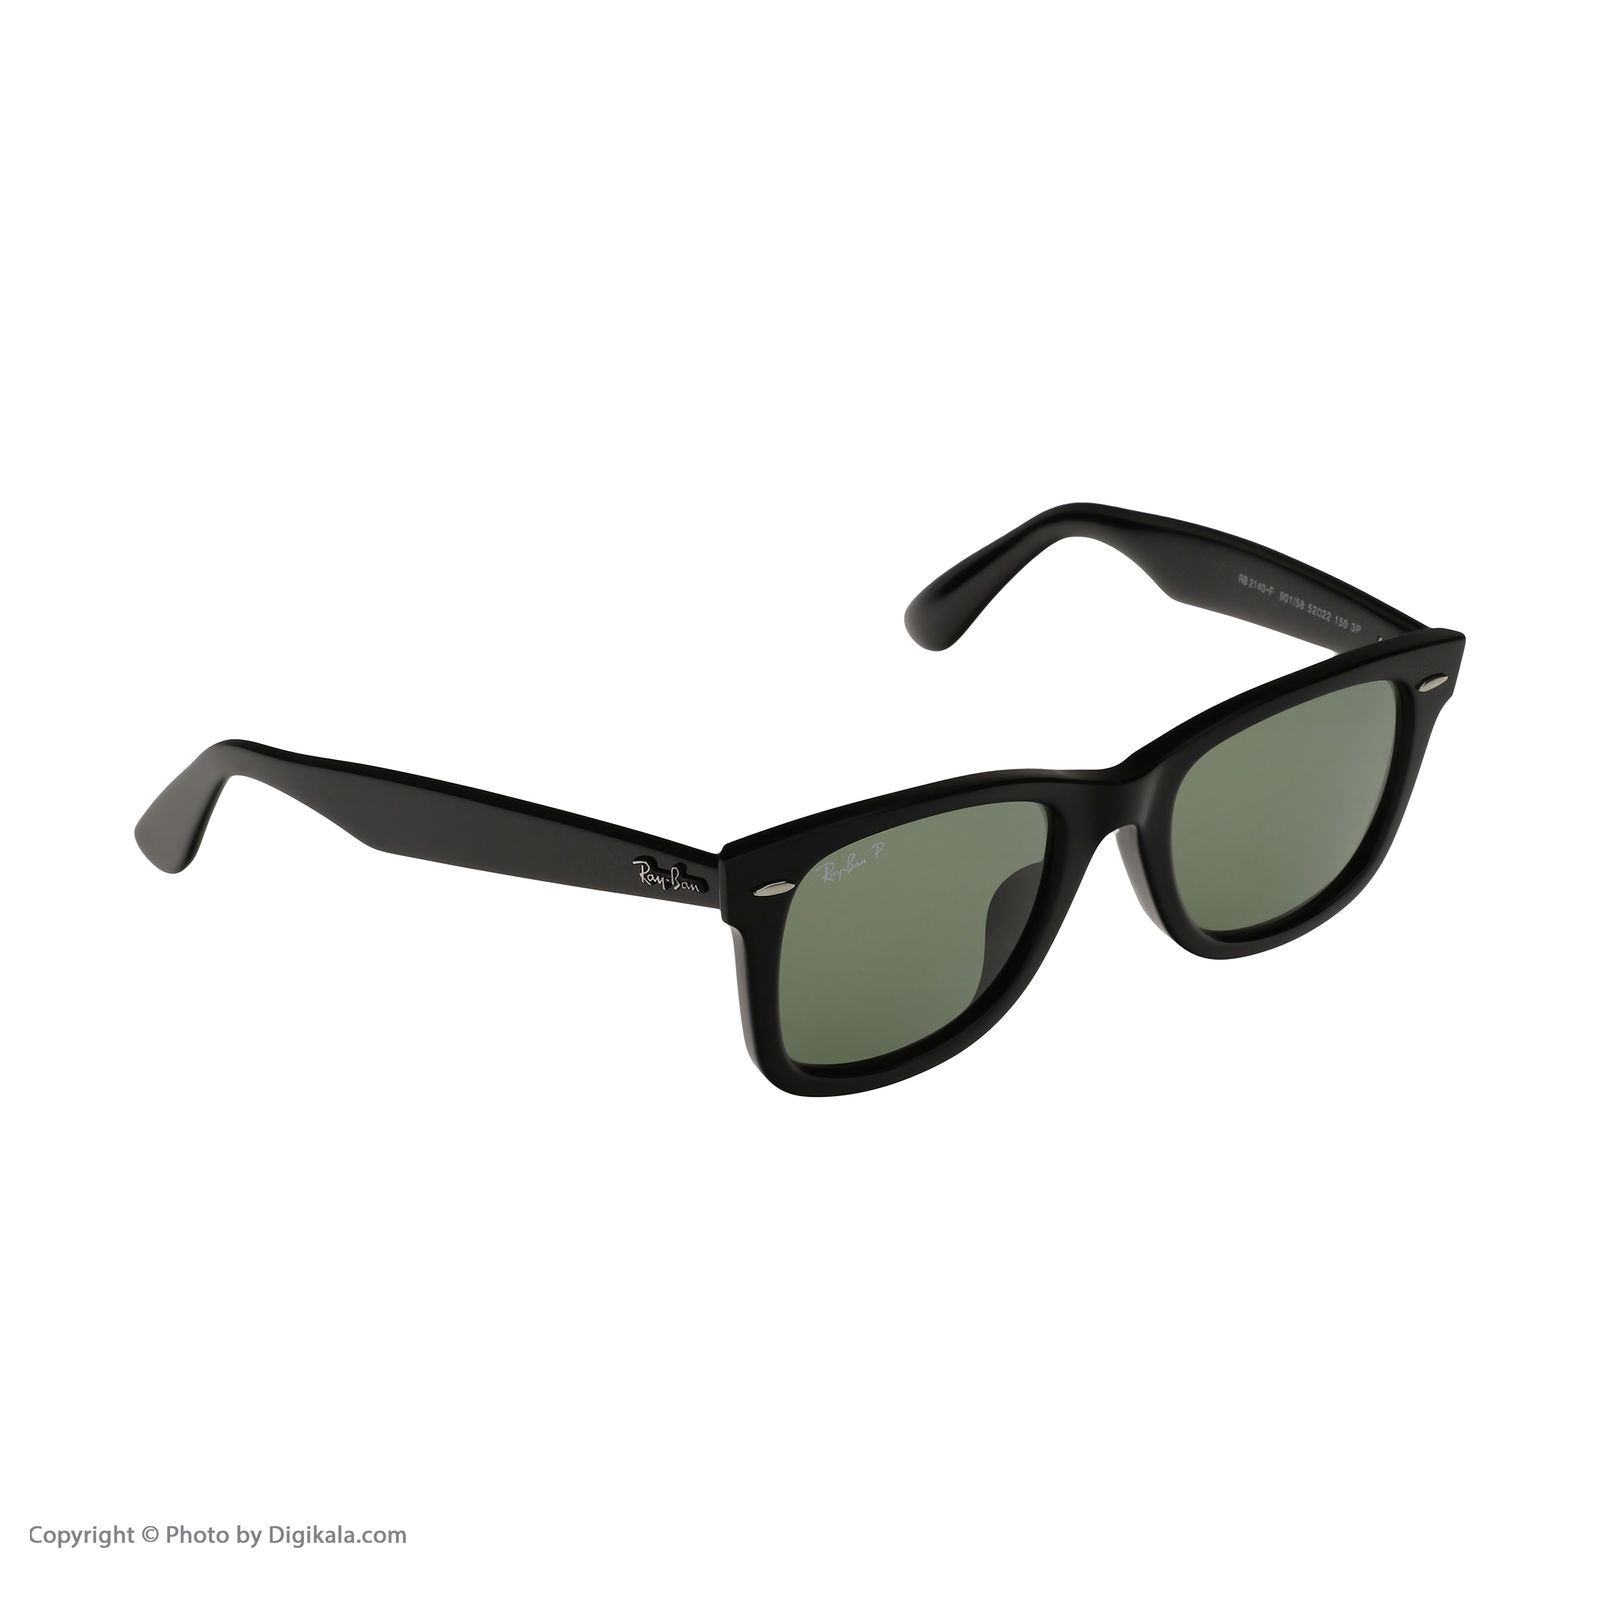 عینک آفتابی ری بن مدل 2140f 901/58-52 -  - 3